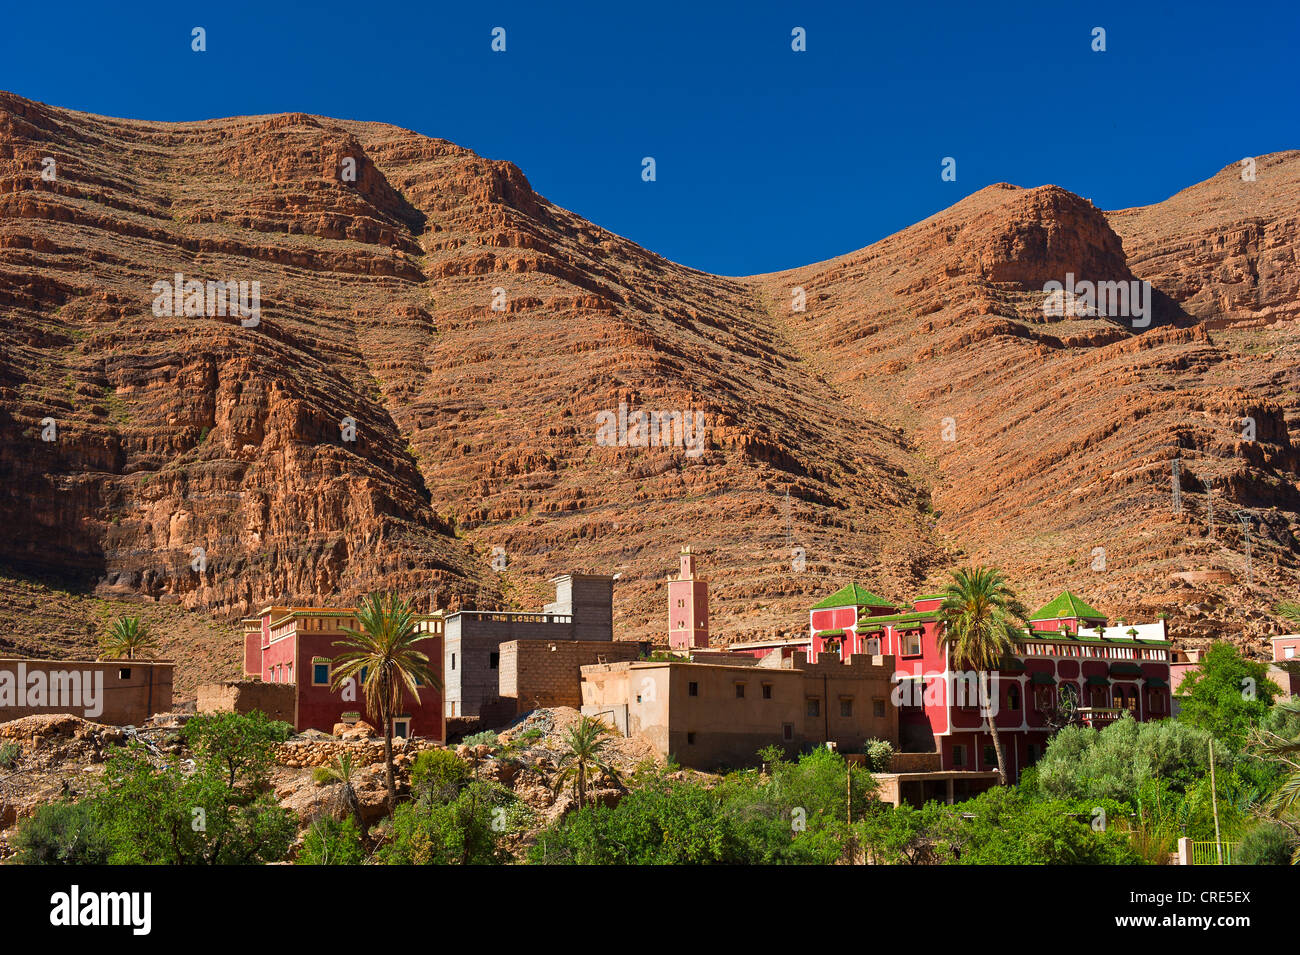 Piccolo villaggio con una moschea nella parte anteriore del rosso pareti di roccia, Ait Mansour Valley, Anti-Atlas montagne, sud del Marocco, Marocco Foto Stock